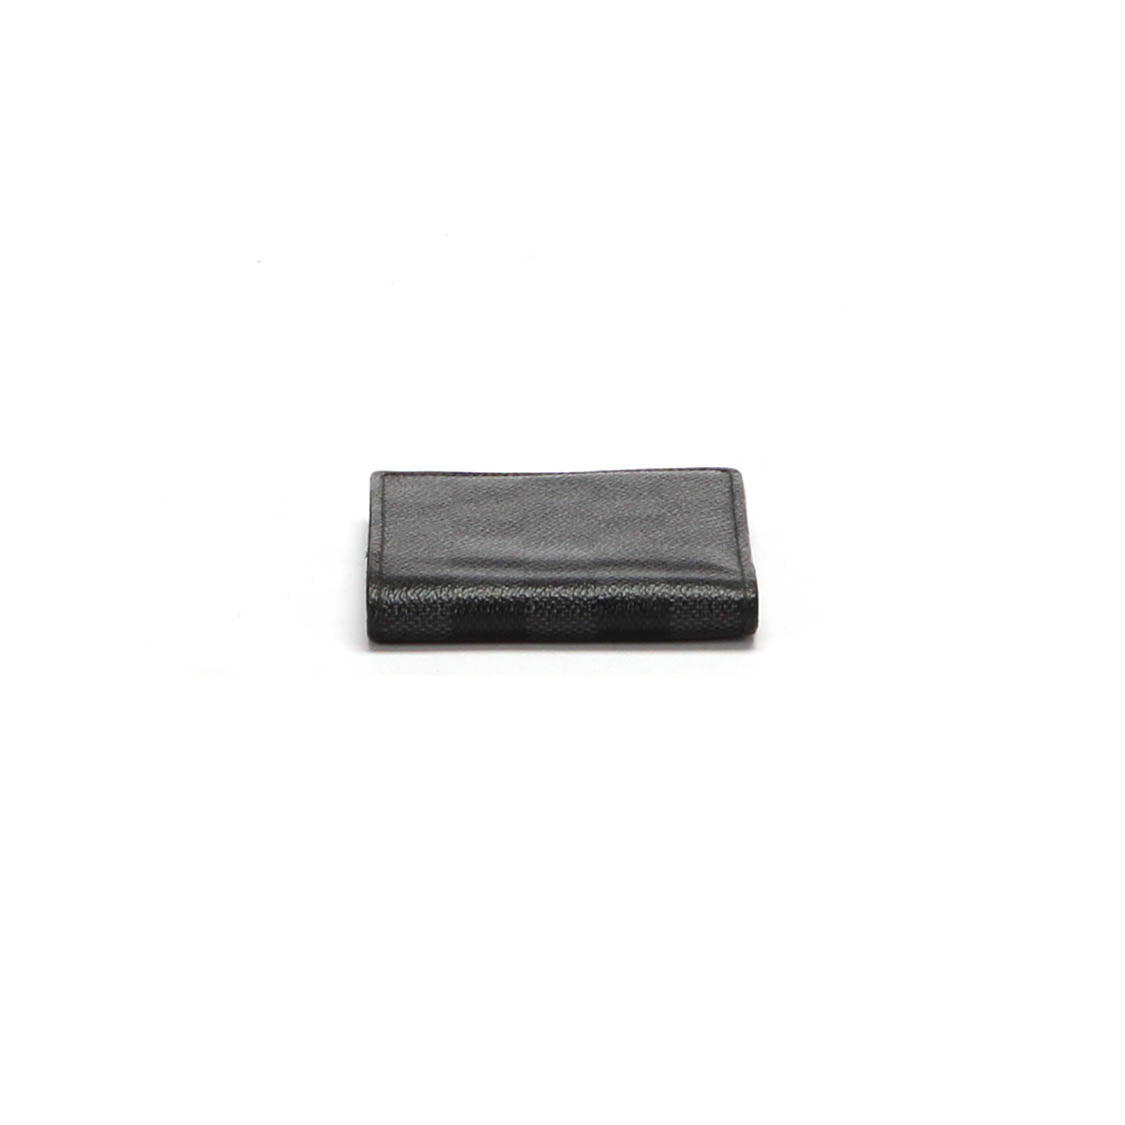 Louis Vuitton Multiple Wallet N62663 Review 